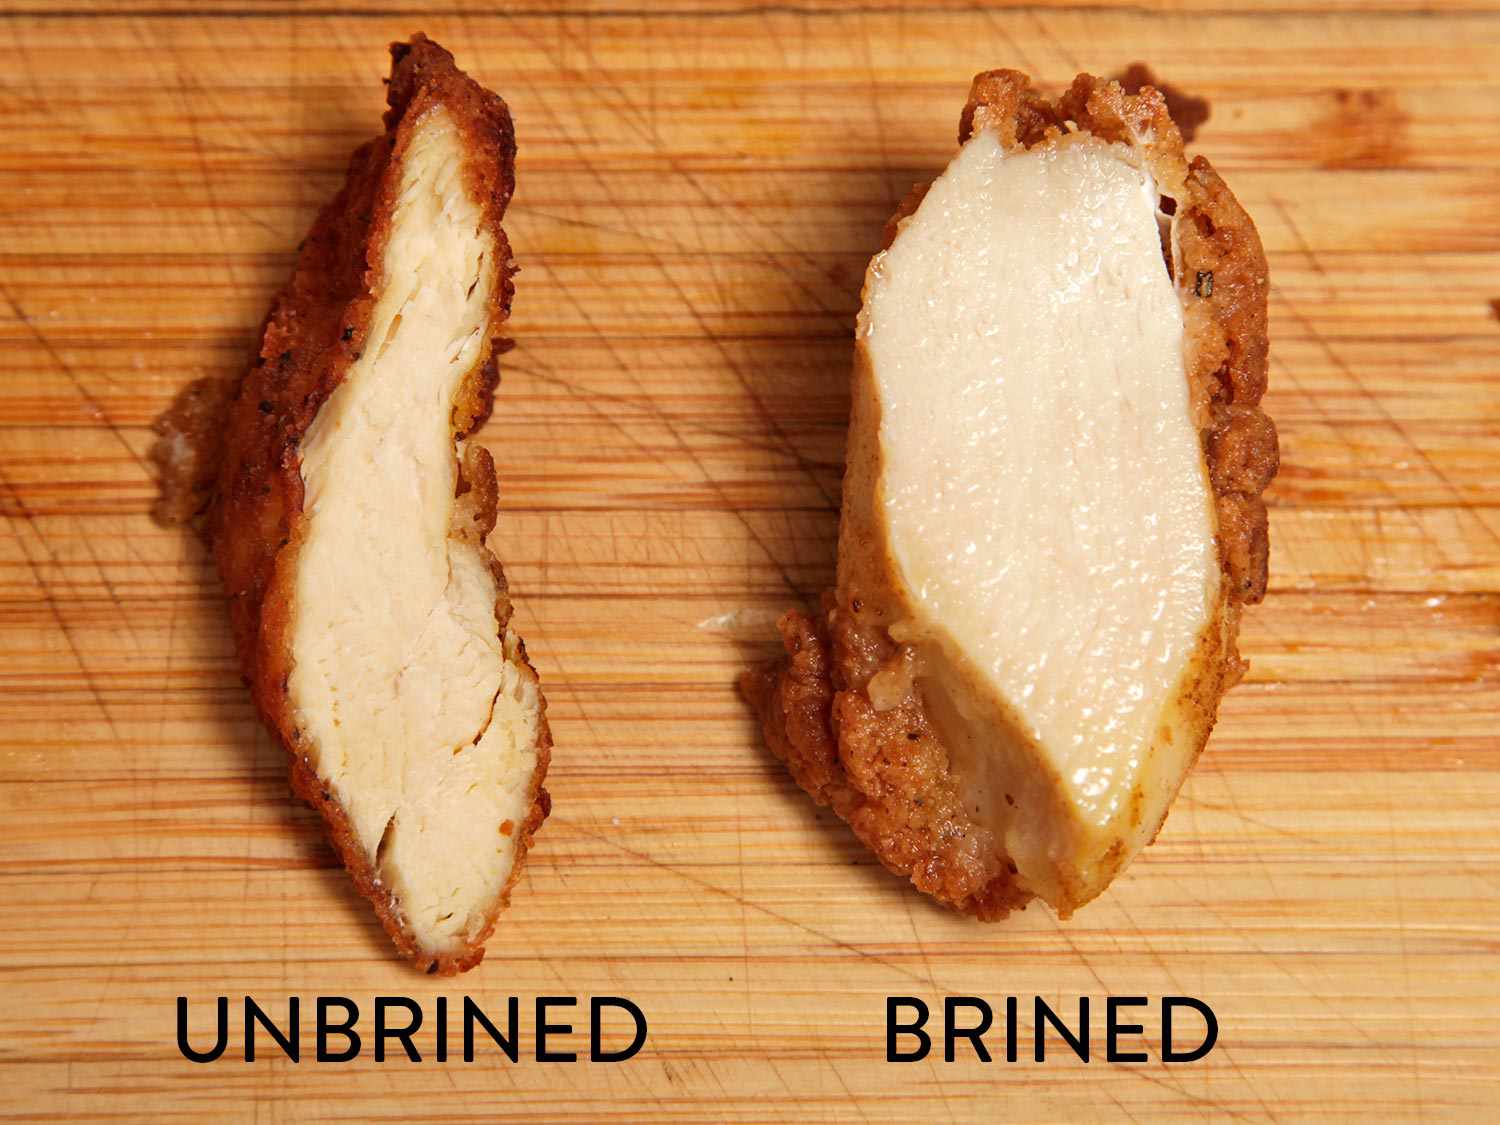 比较卤化和未卤化炸鸡的横截面。